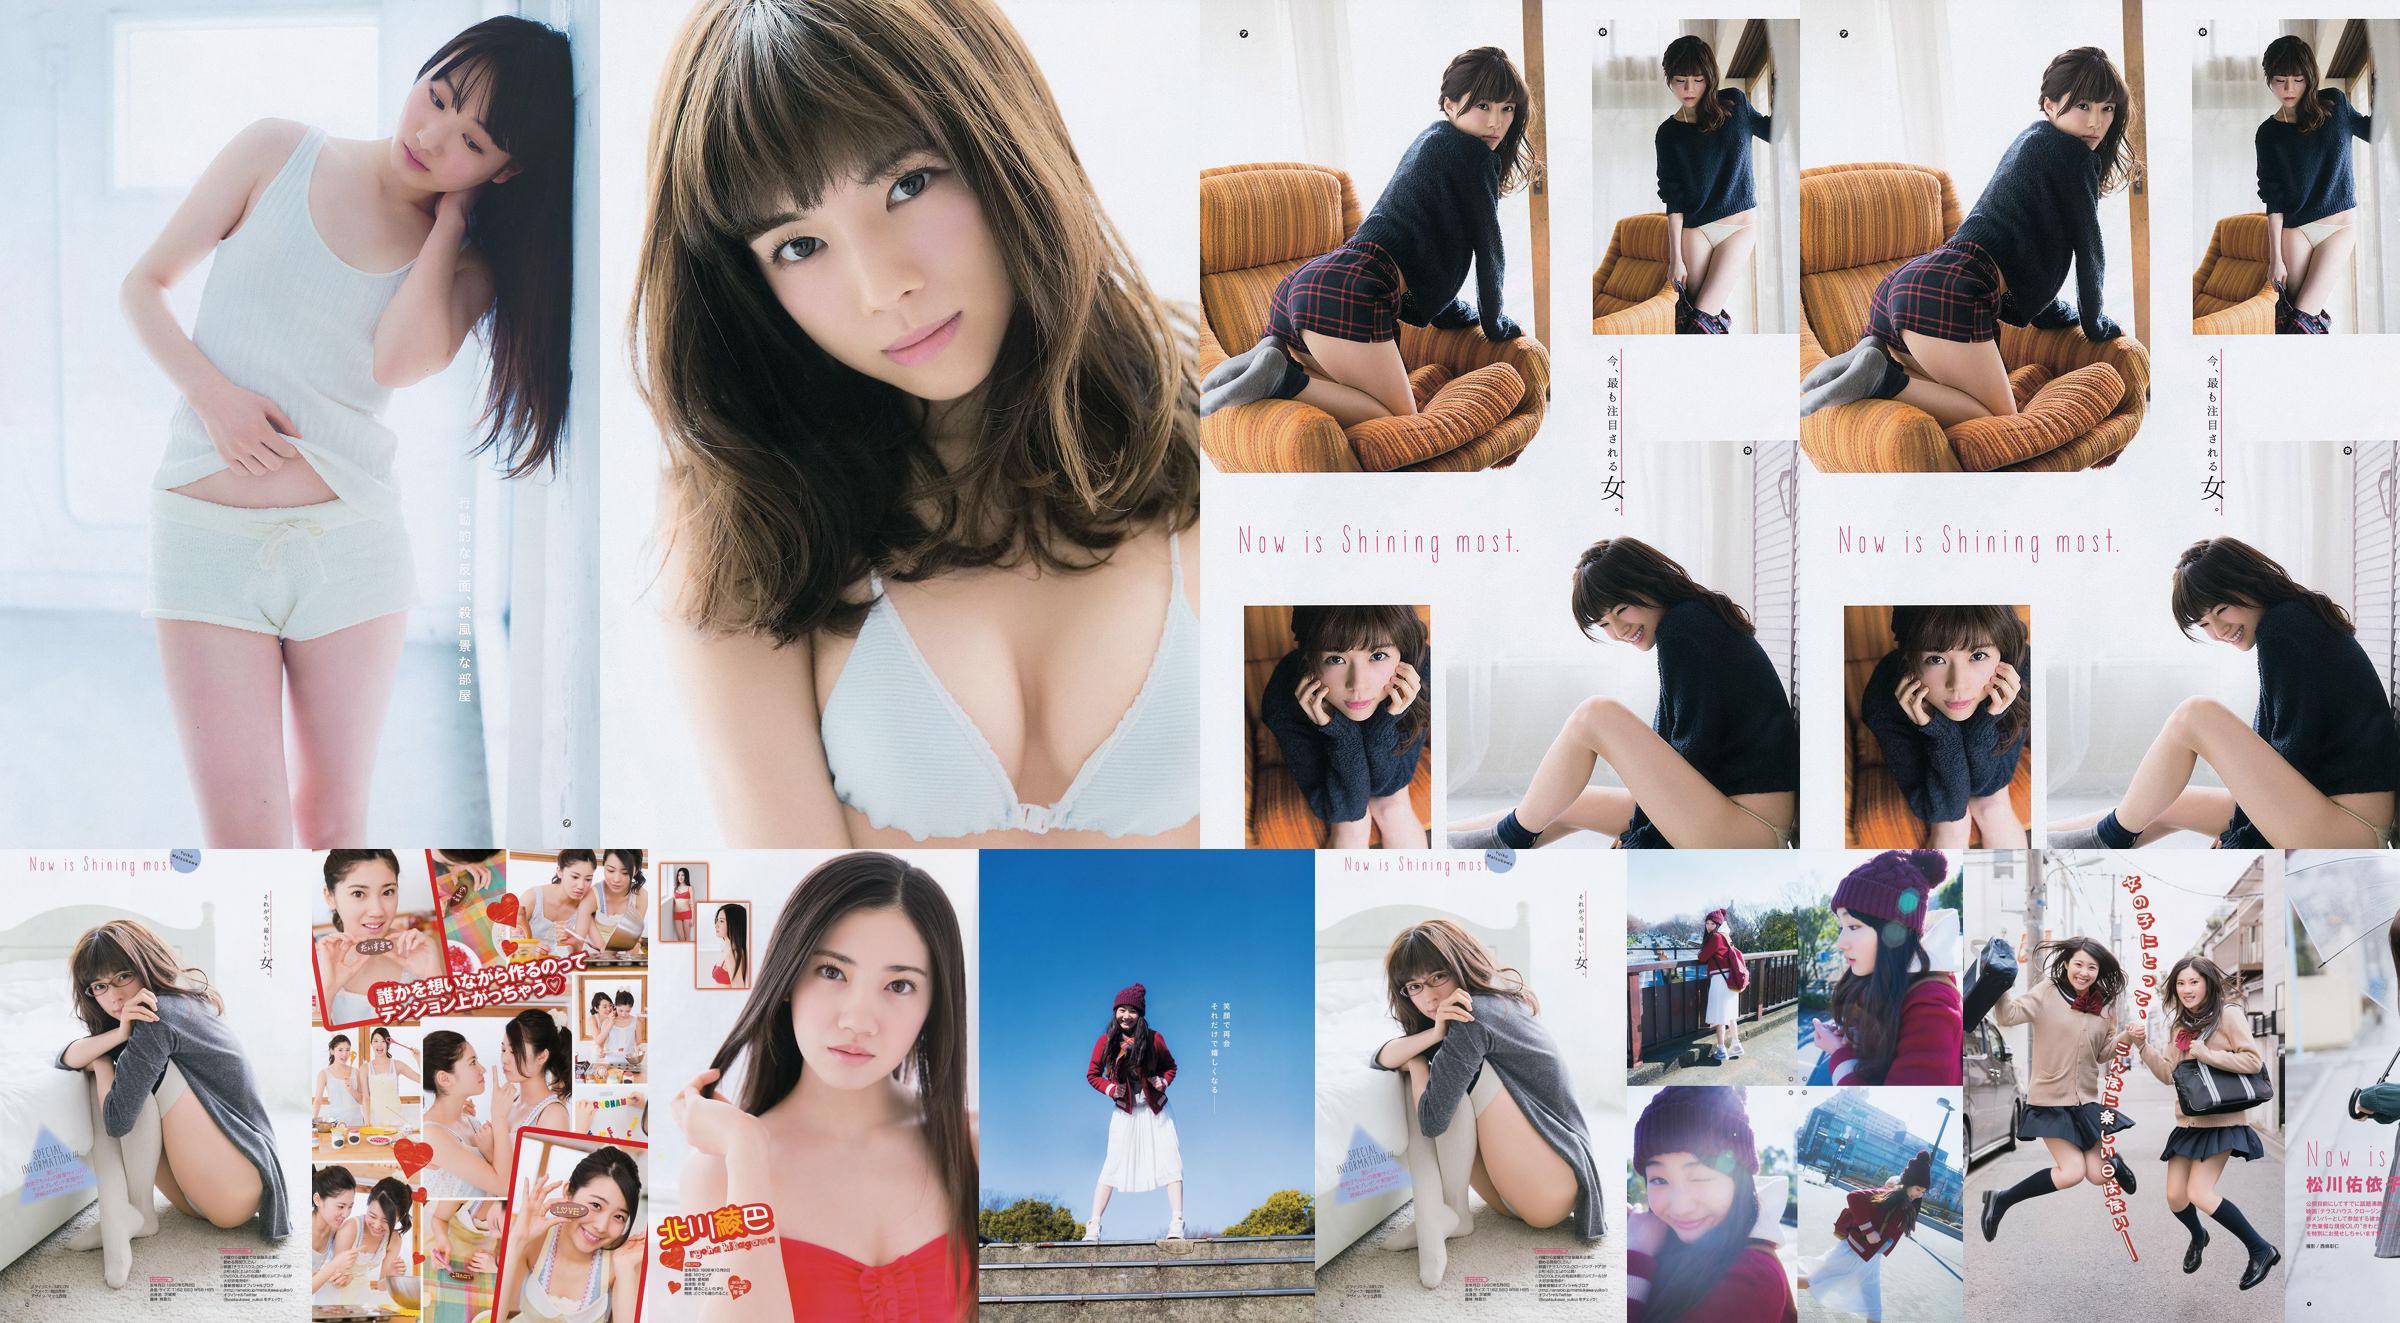 [Young Gangan] Ryoha Kitagawa Ami Miyamae Yuiko Matsukawa Narumi Akizuki 2015 Fotografia No.04 No.83c8c2 Página 2